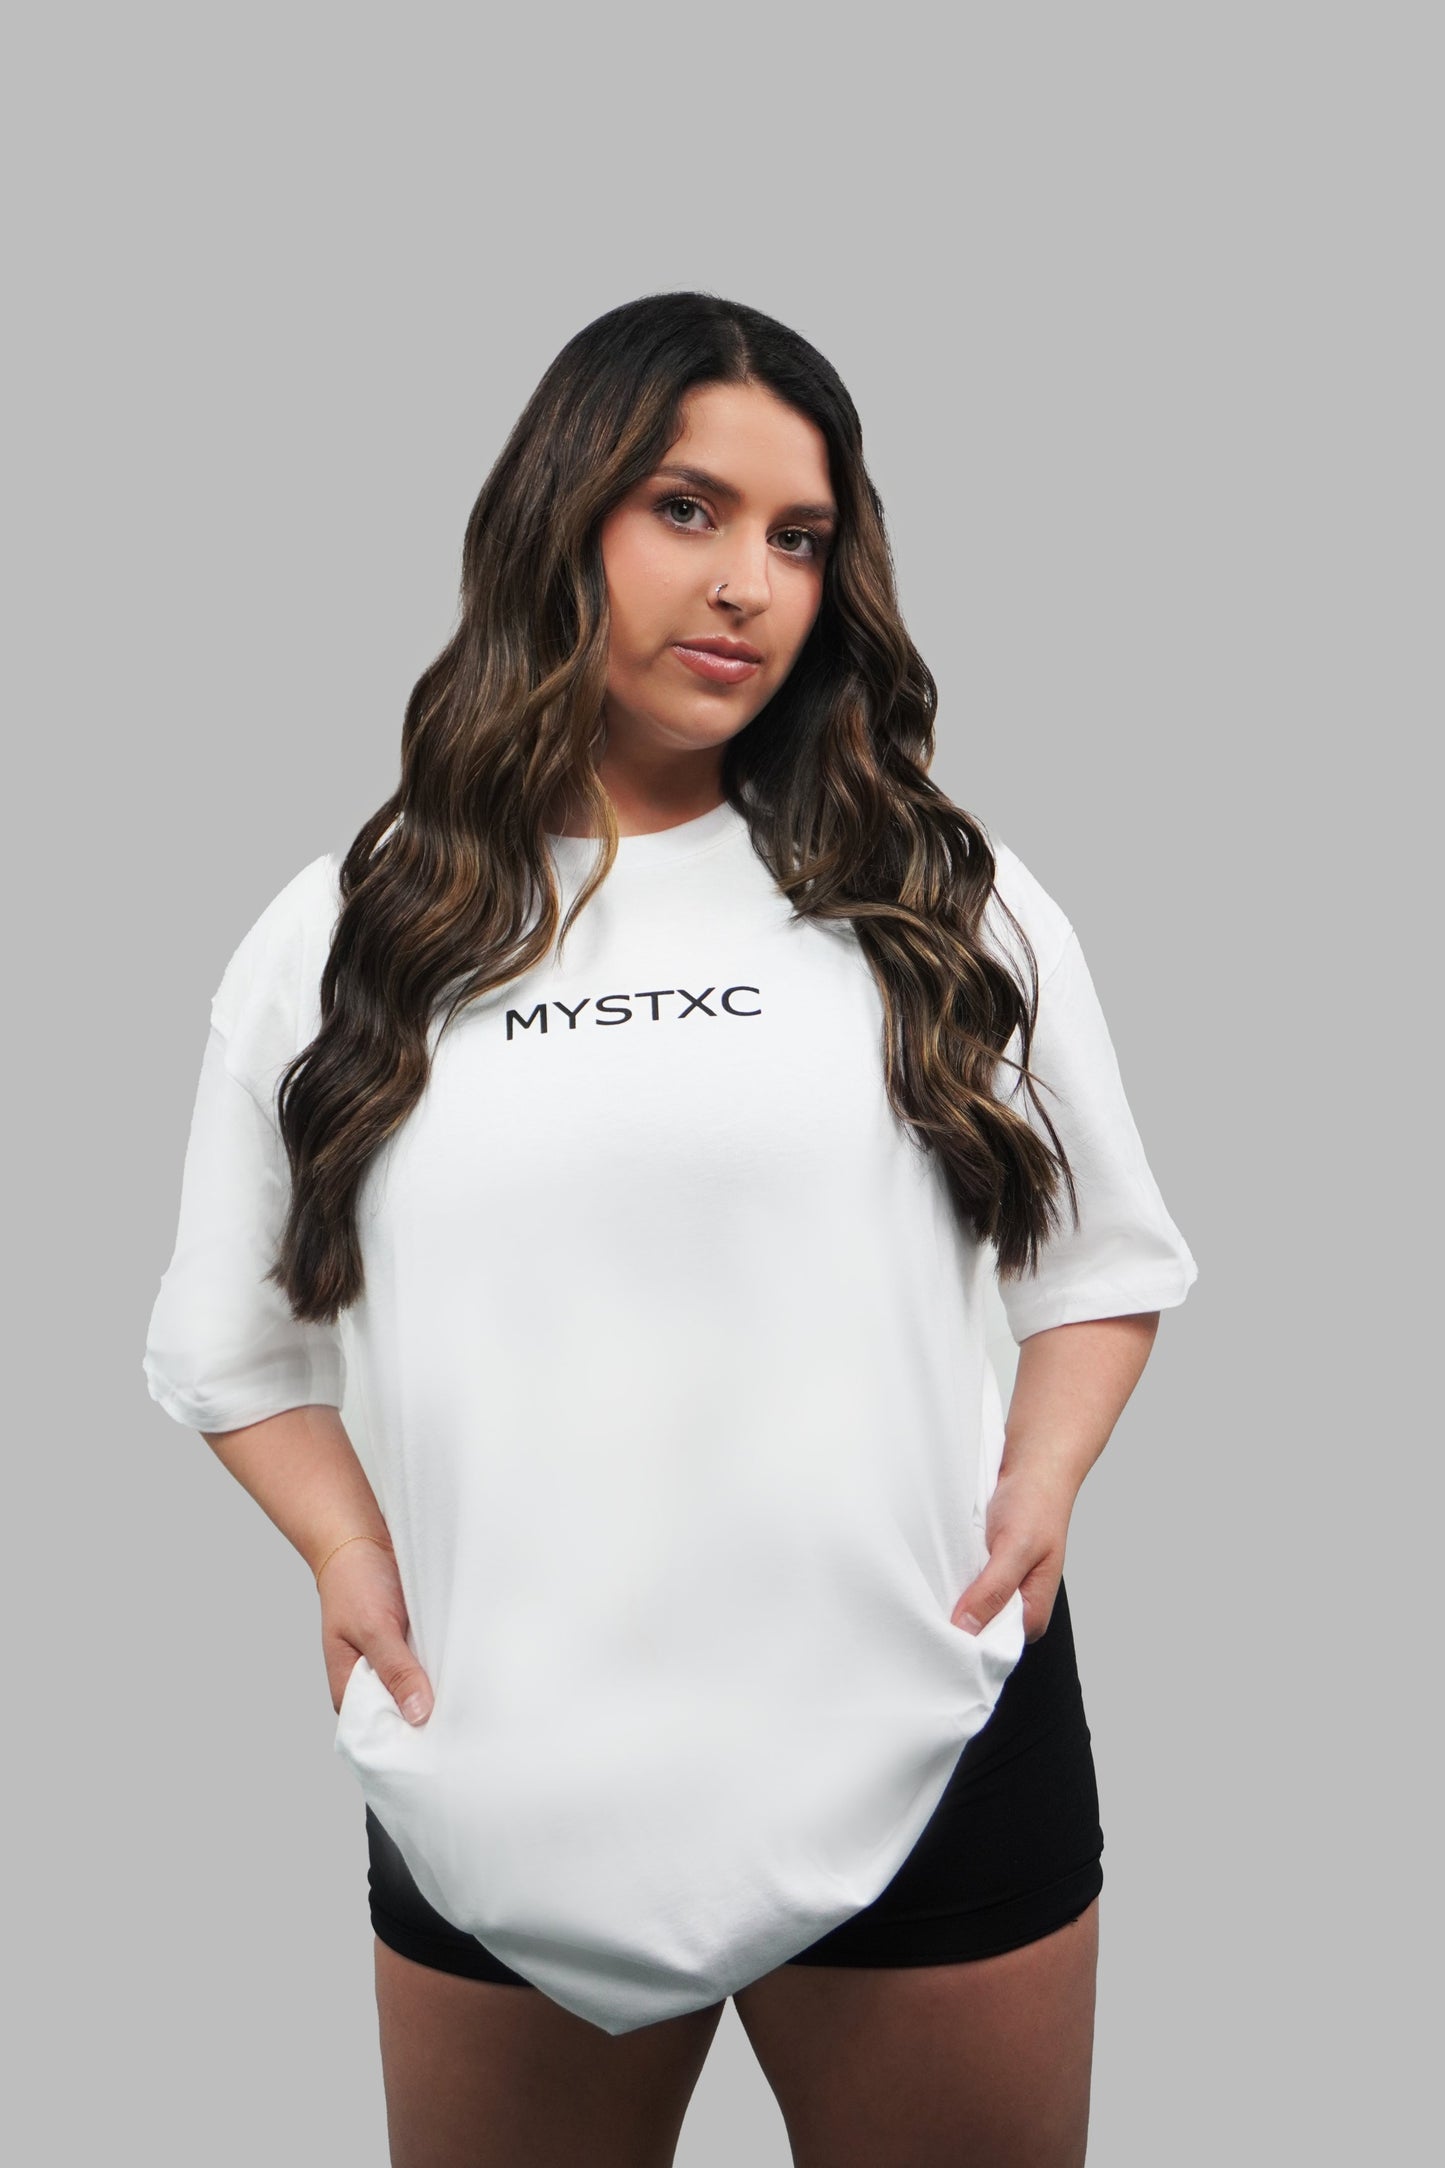 Mystxc